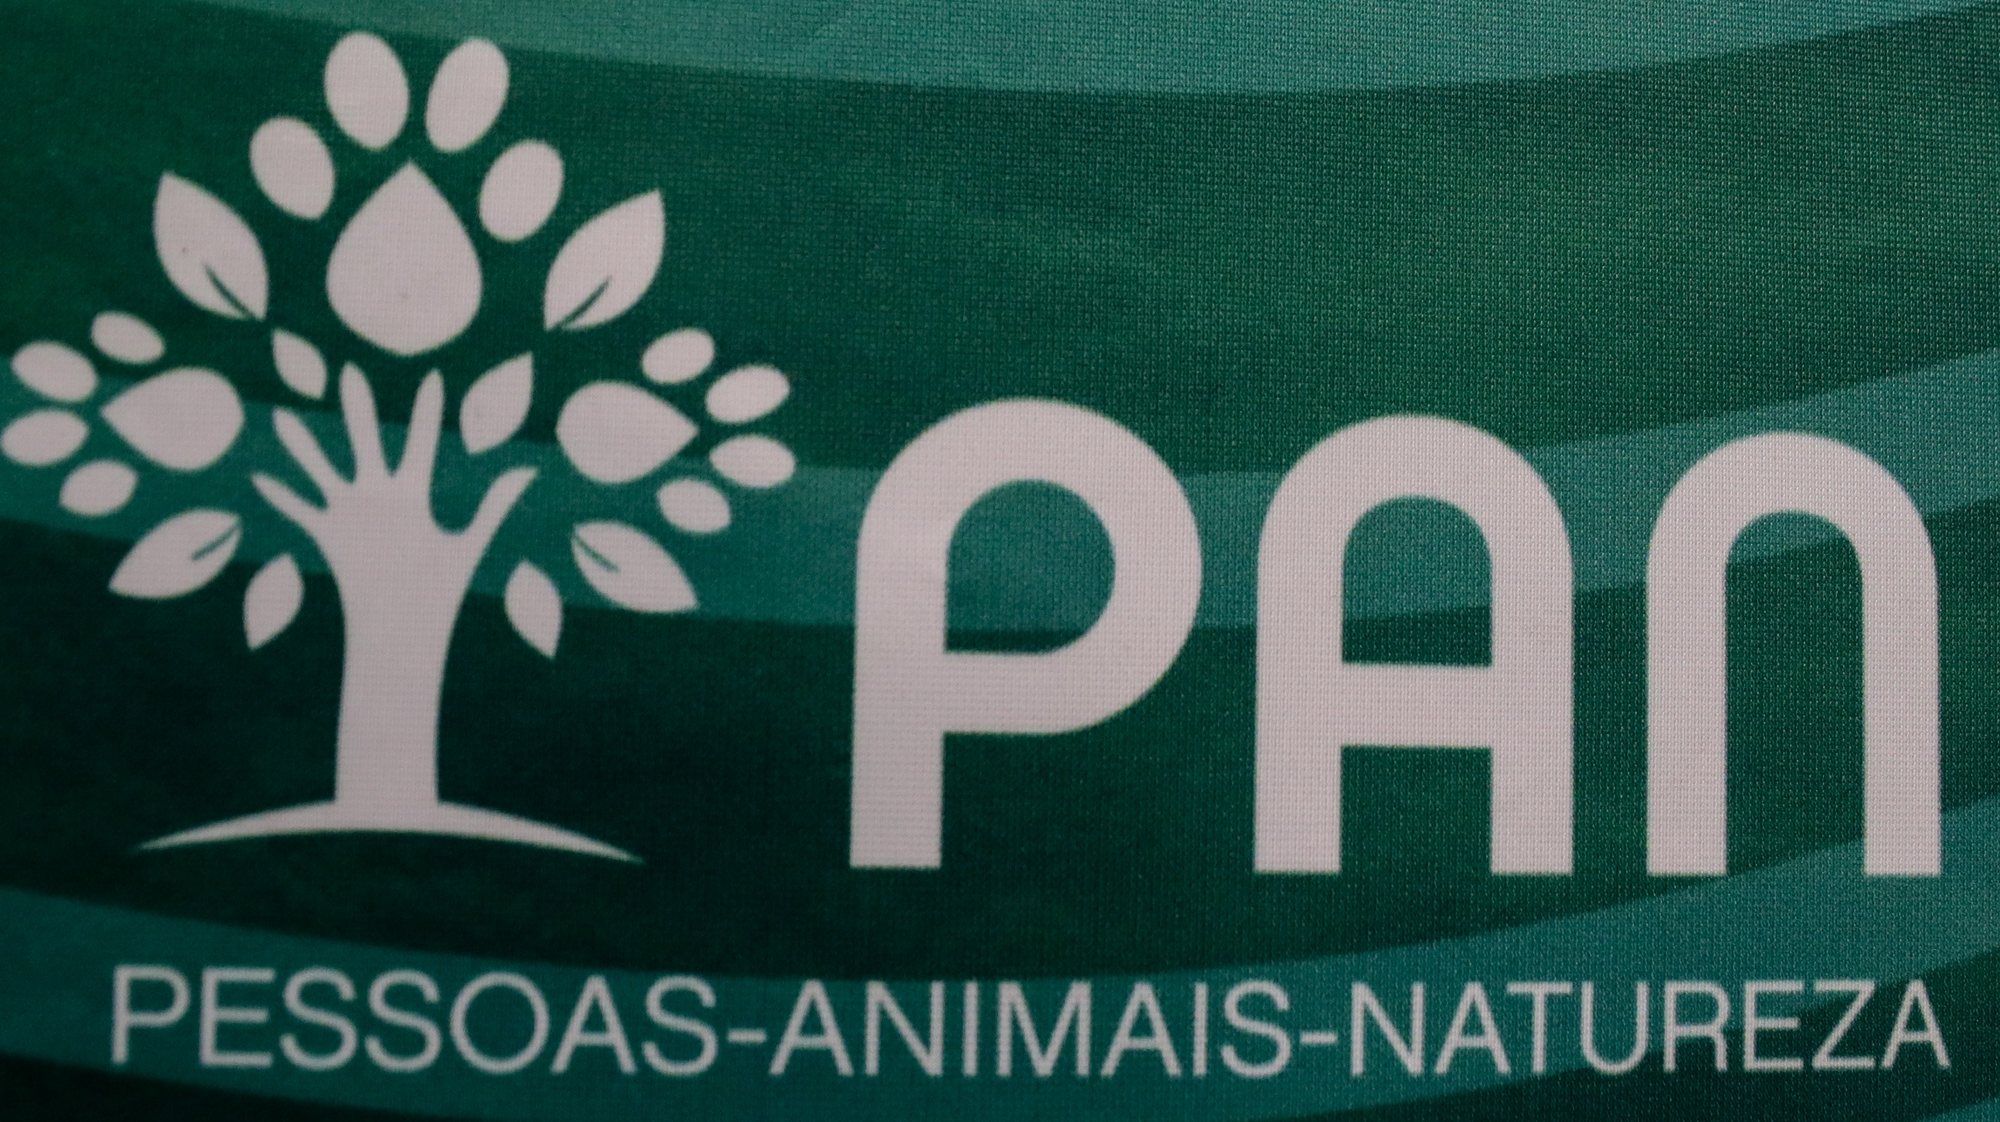 Logotipo do partido Pessoas Animais Natureza (PAN), 08 de novembro de 2021. TIAGO PETINGA/LUSA